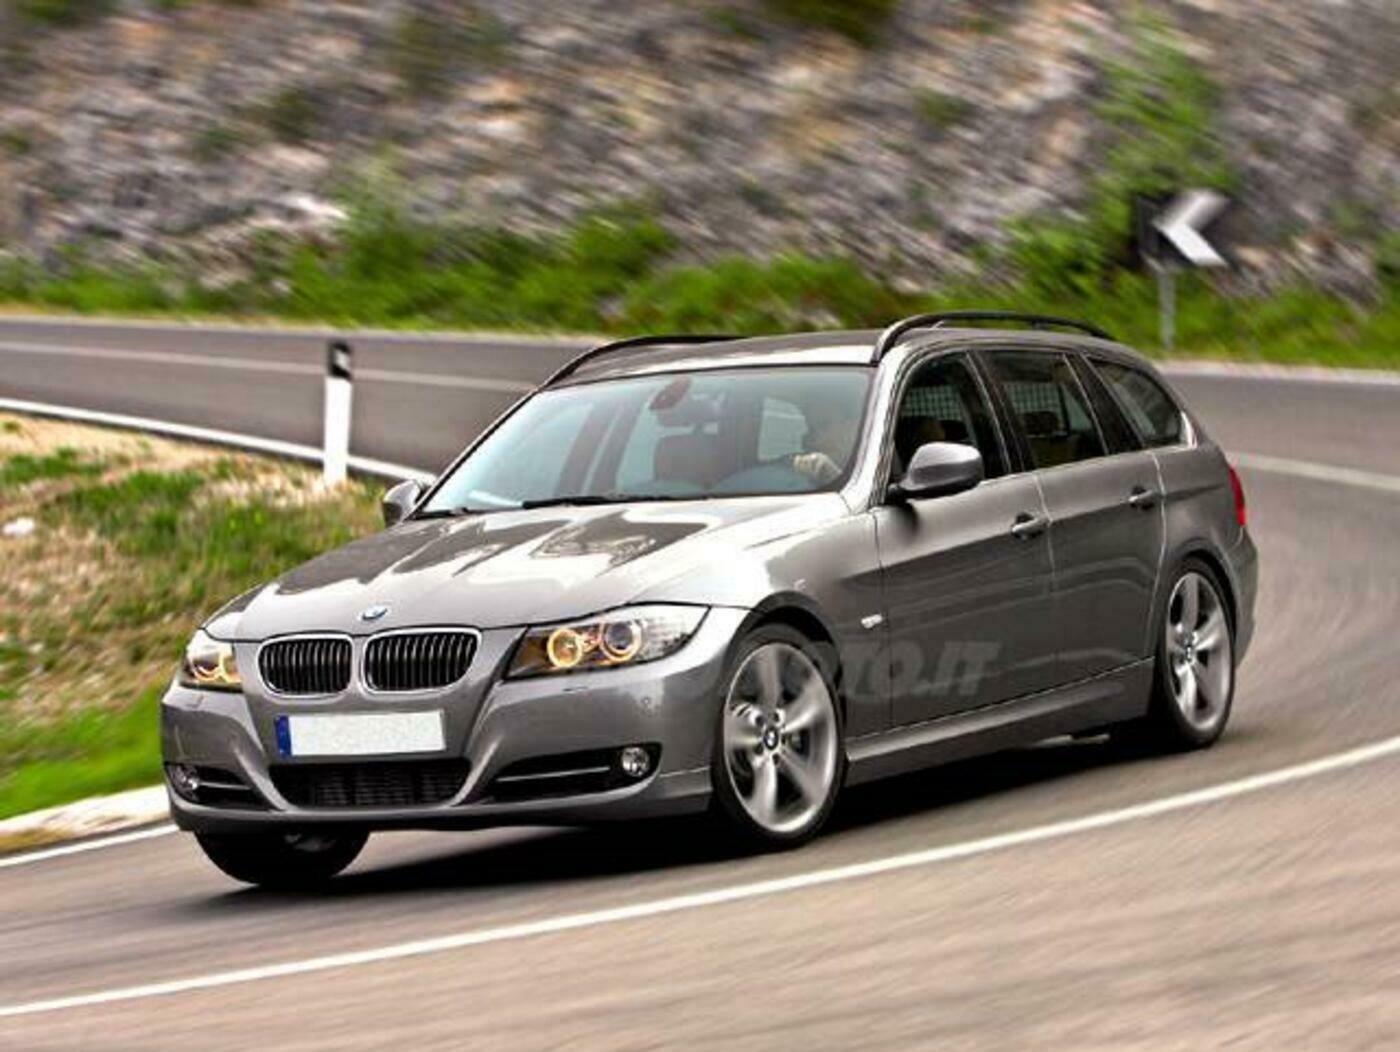 PARAURTI BMW SERIE 3 E90 E91 CON FORI LAVAFARI E PRIMER ANTERIORE DA 2009 A 2011